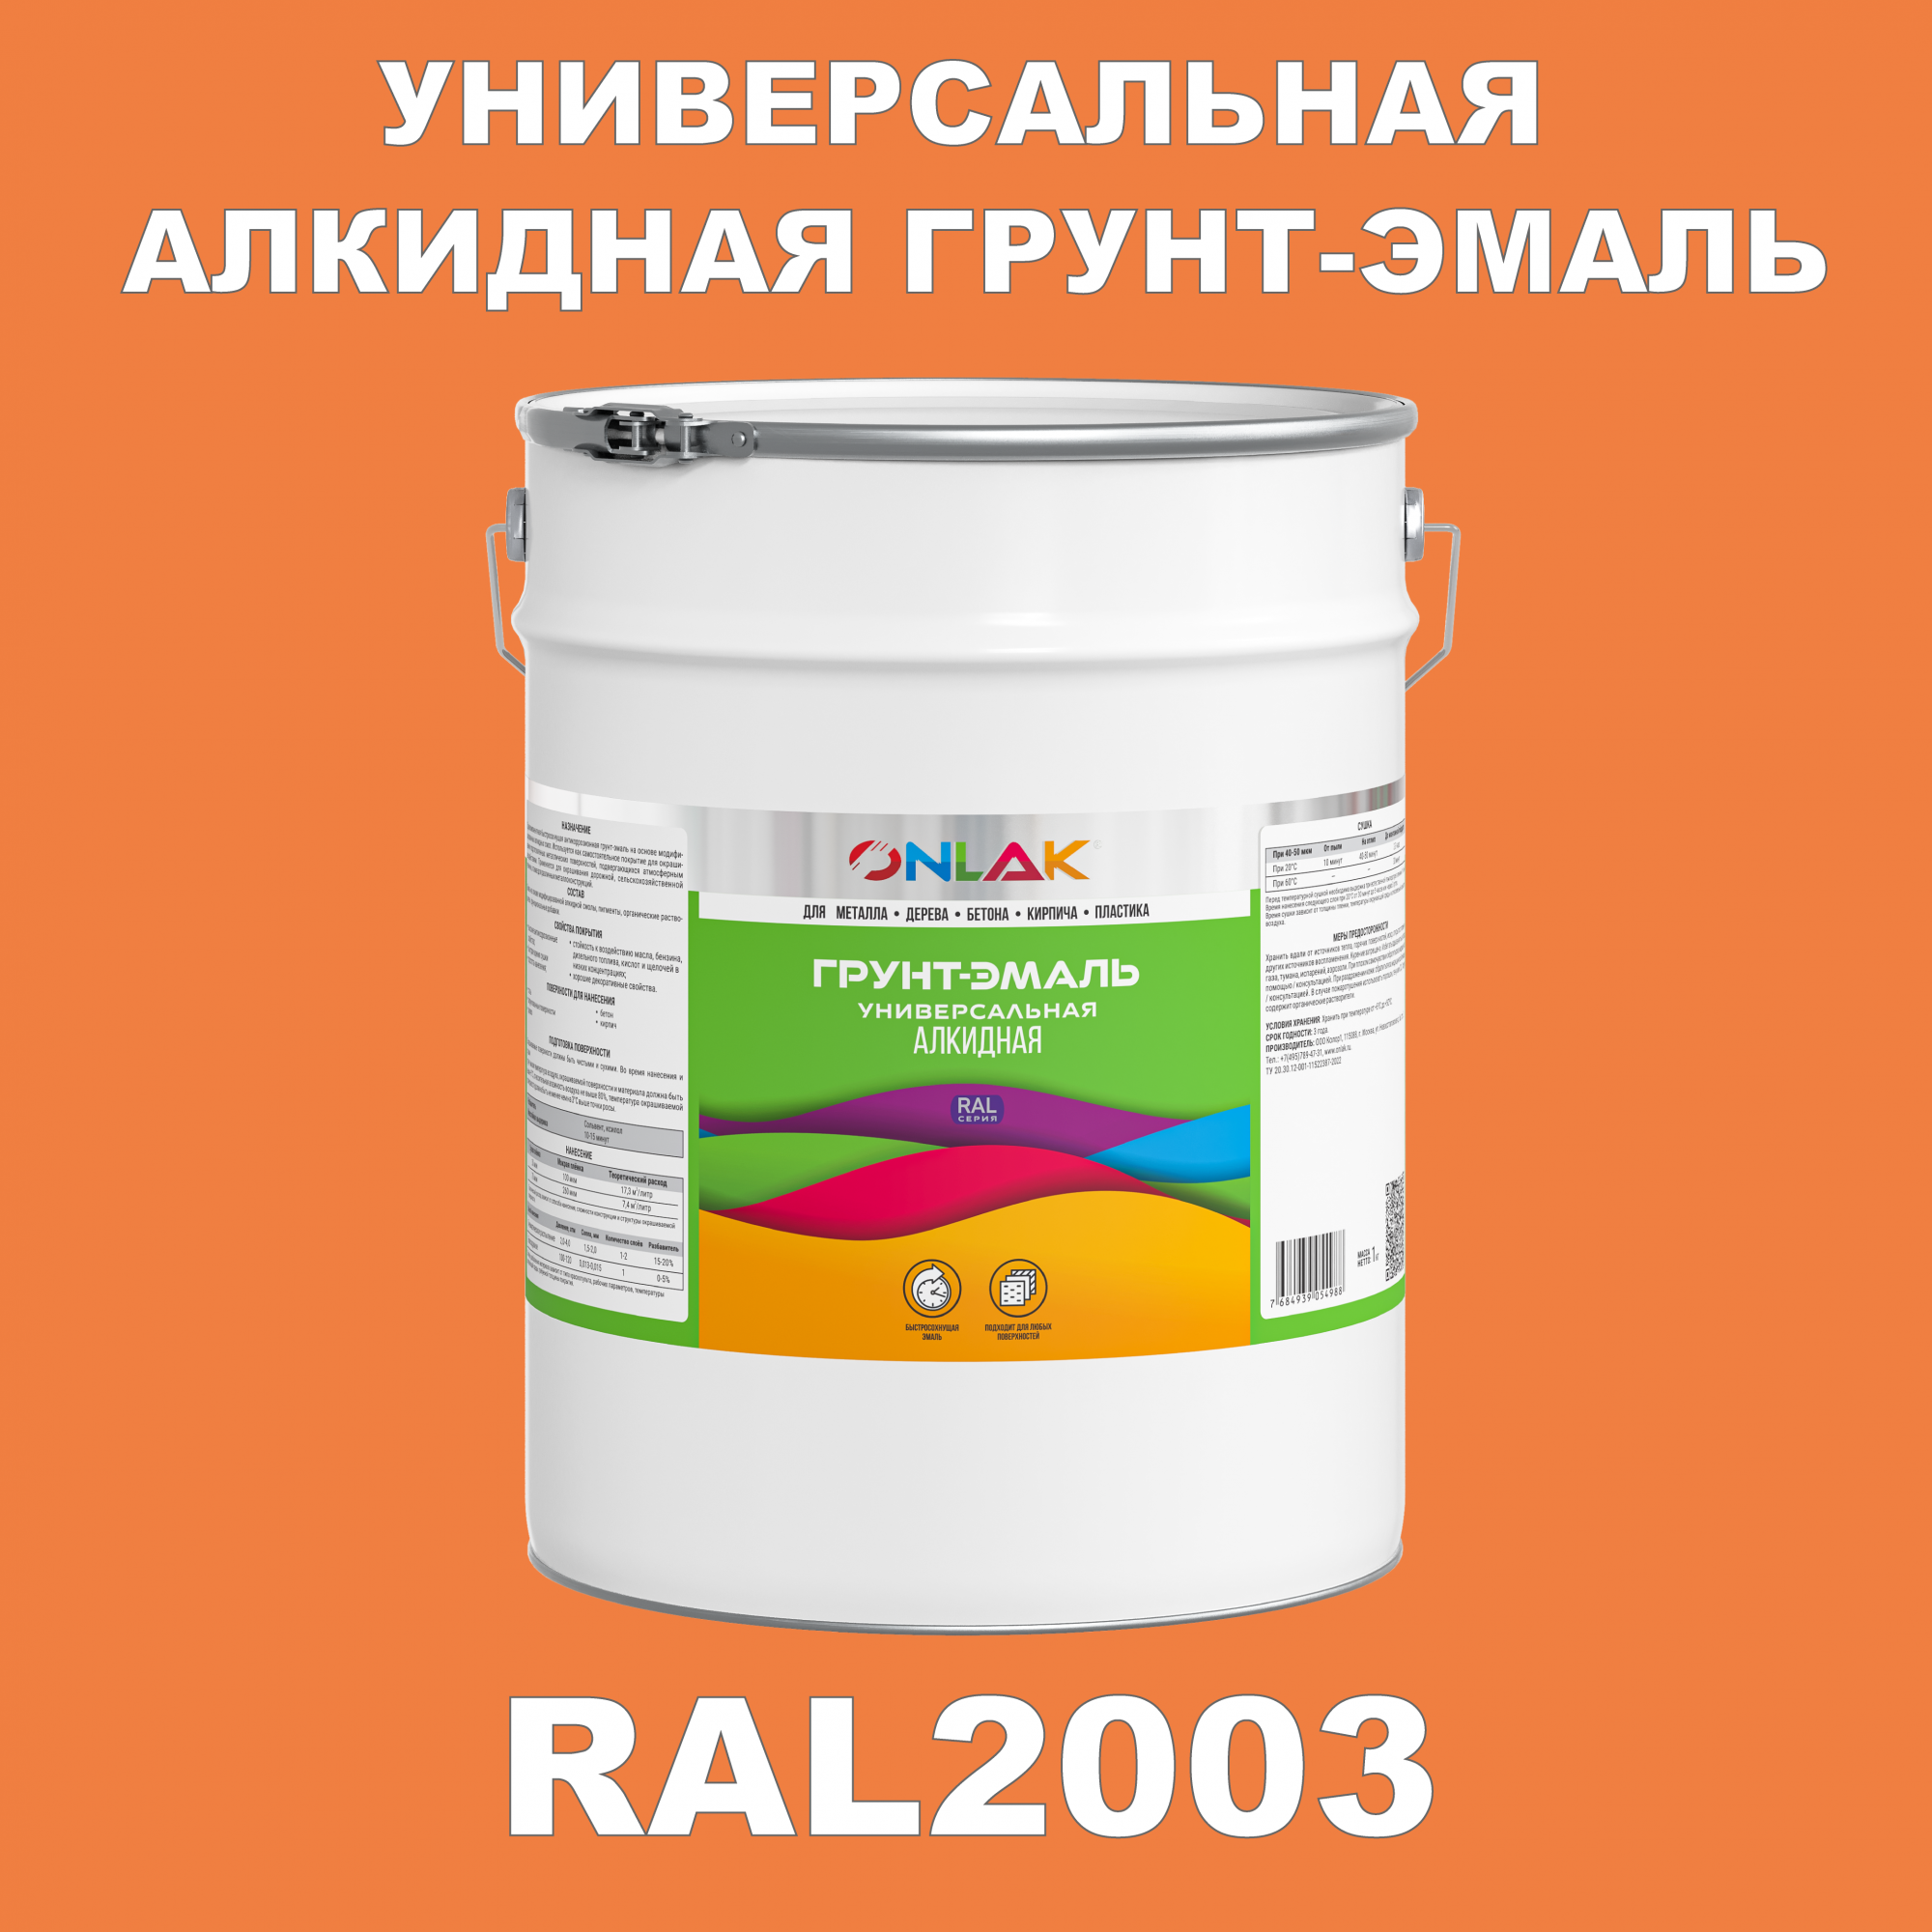 Грунт-эмаль ONLAK 1К RAL2003 антикоррозионная алкидная по металлу по ржавчине 20 кг грунт эмаль yollo по ржавчине алкидная белая 0 9 кг